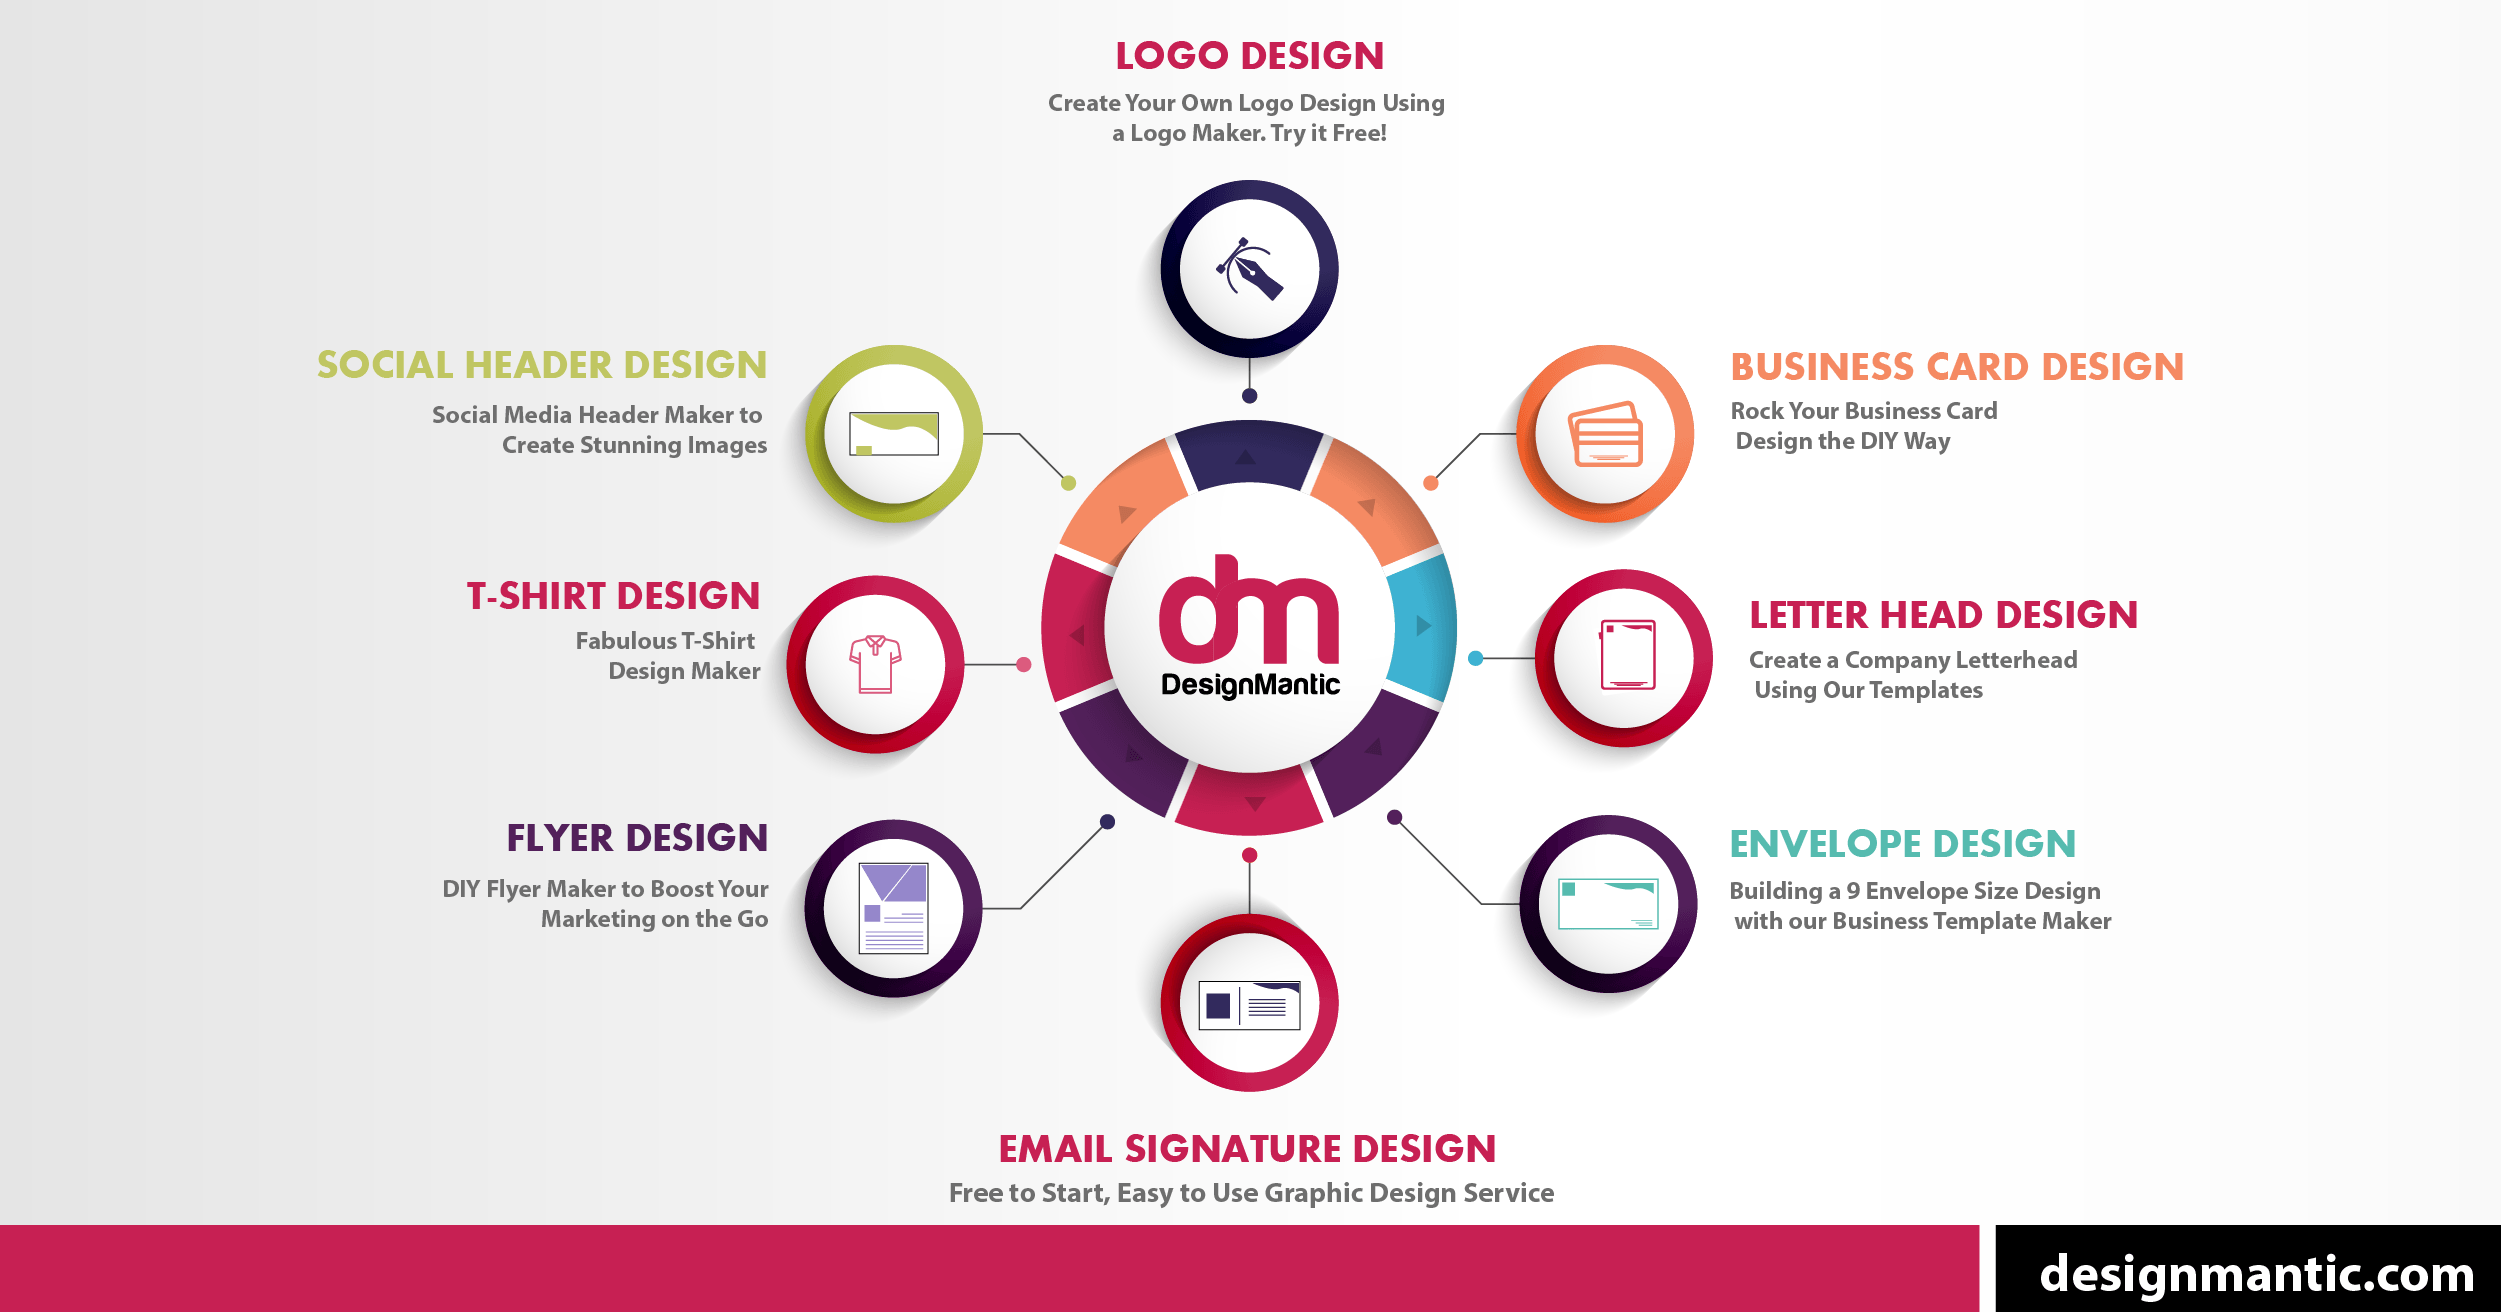 Create Logo - Logo Design Using AI Logo Maker Tool | DesignMantic: The Design Shop